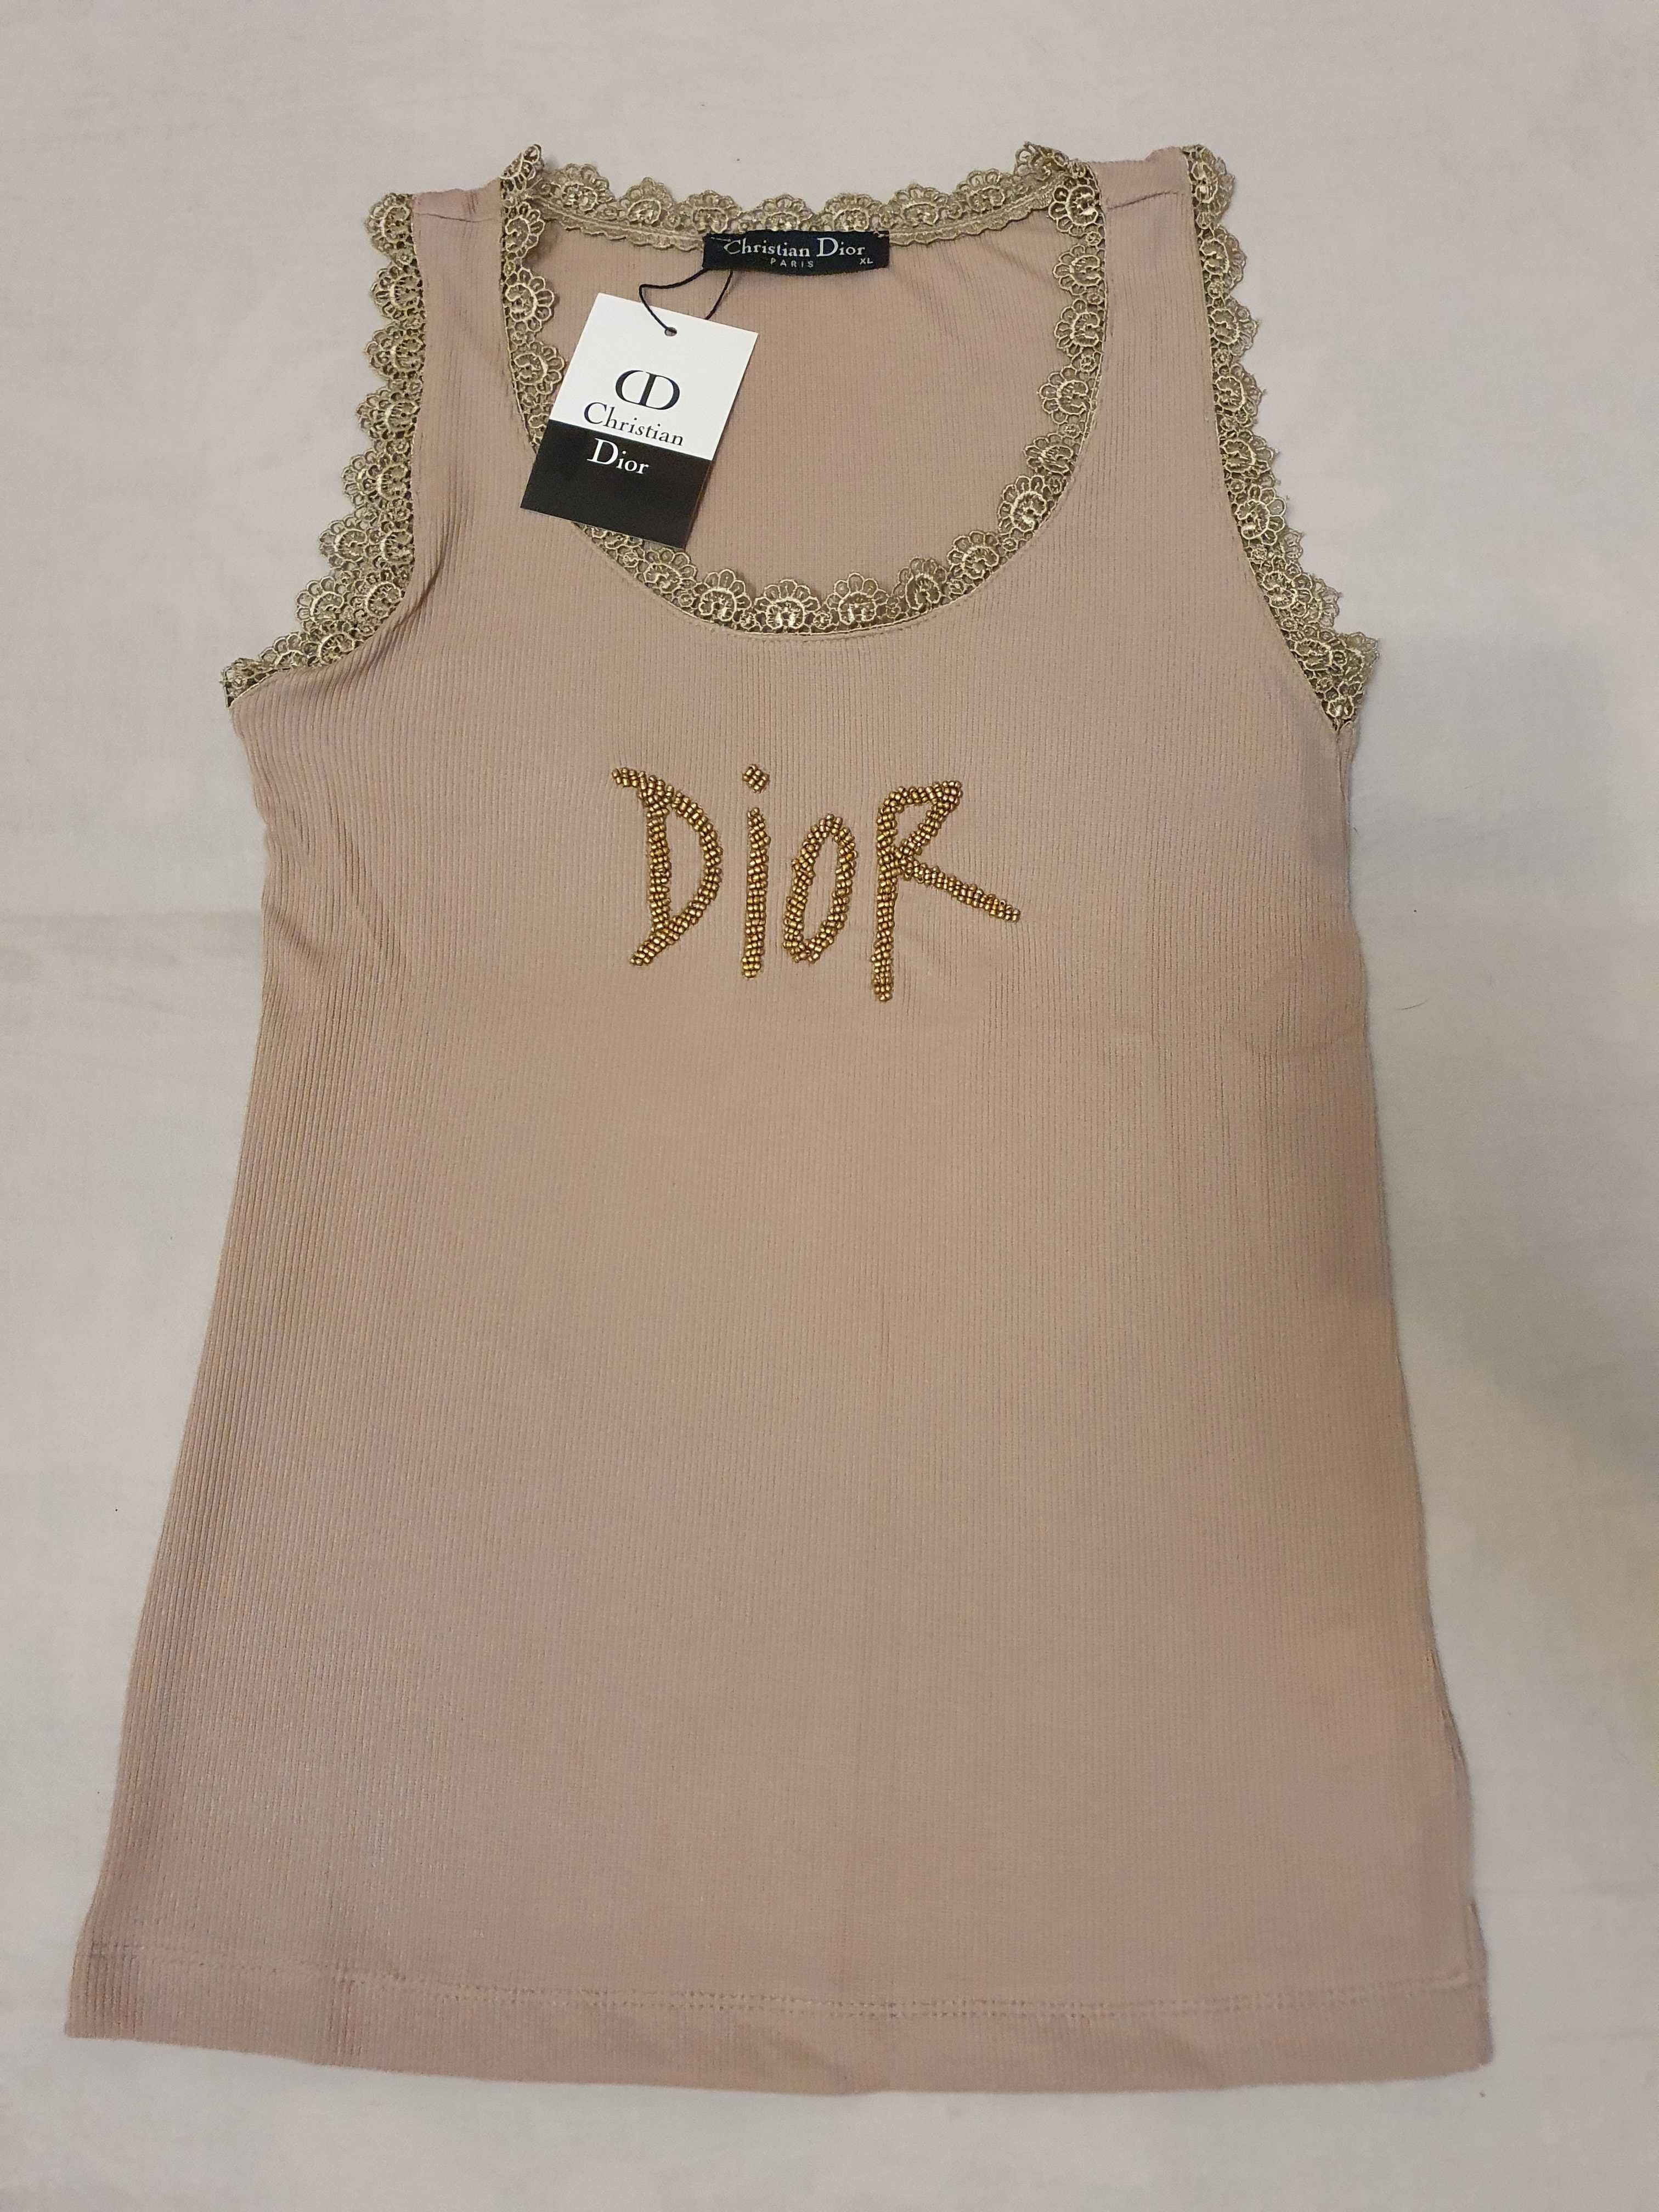 NOWA damska koszulka Christian Dior t-shirt bokserka CD bluzka xl